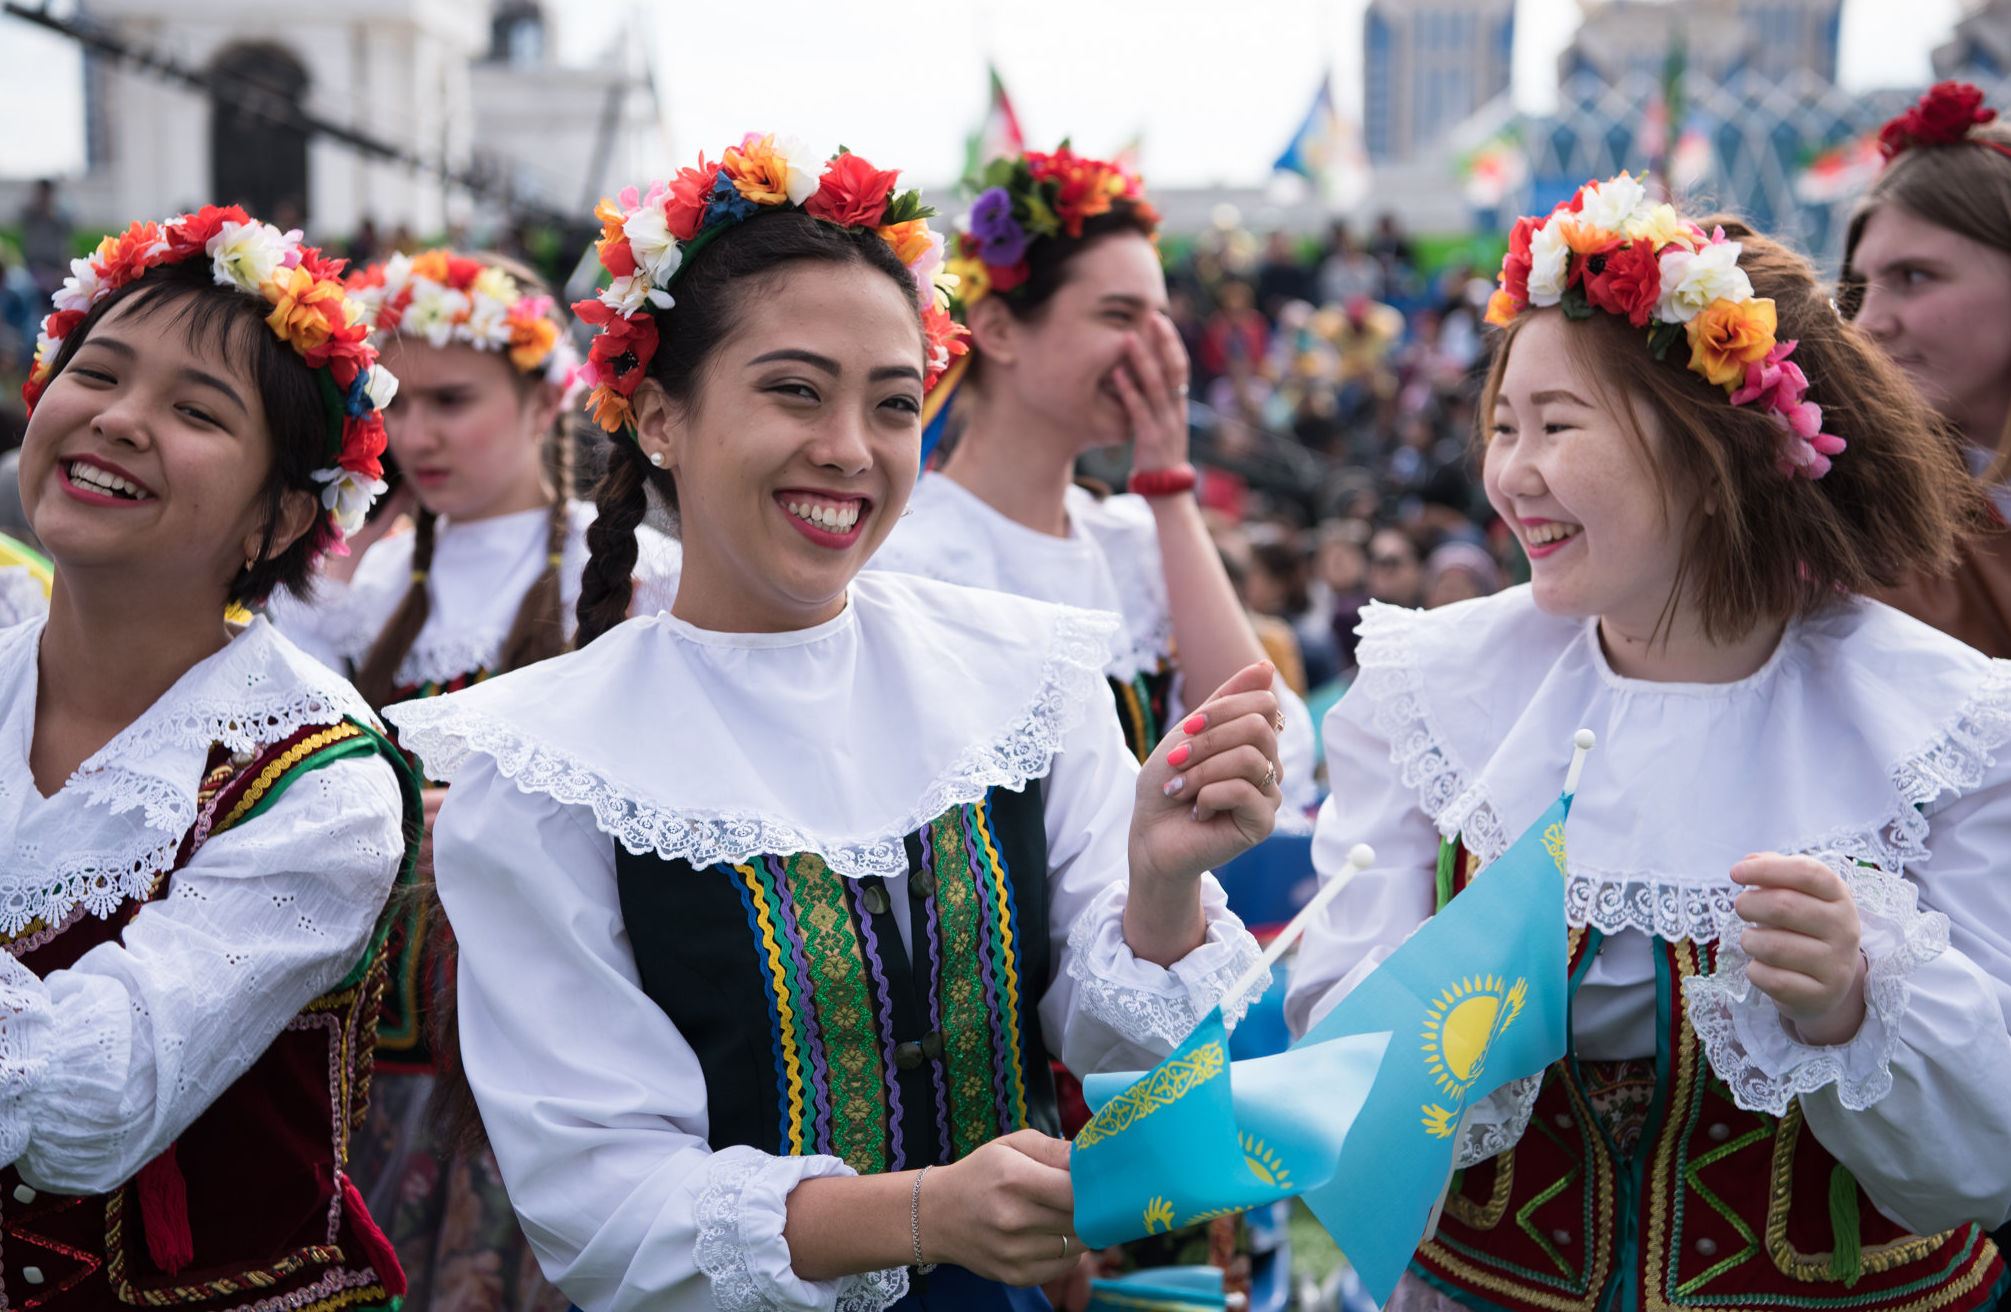 В столице празднуют День единства народа Казахстана